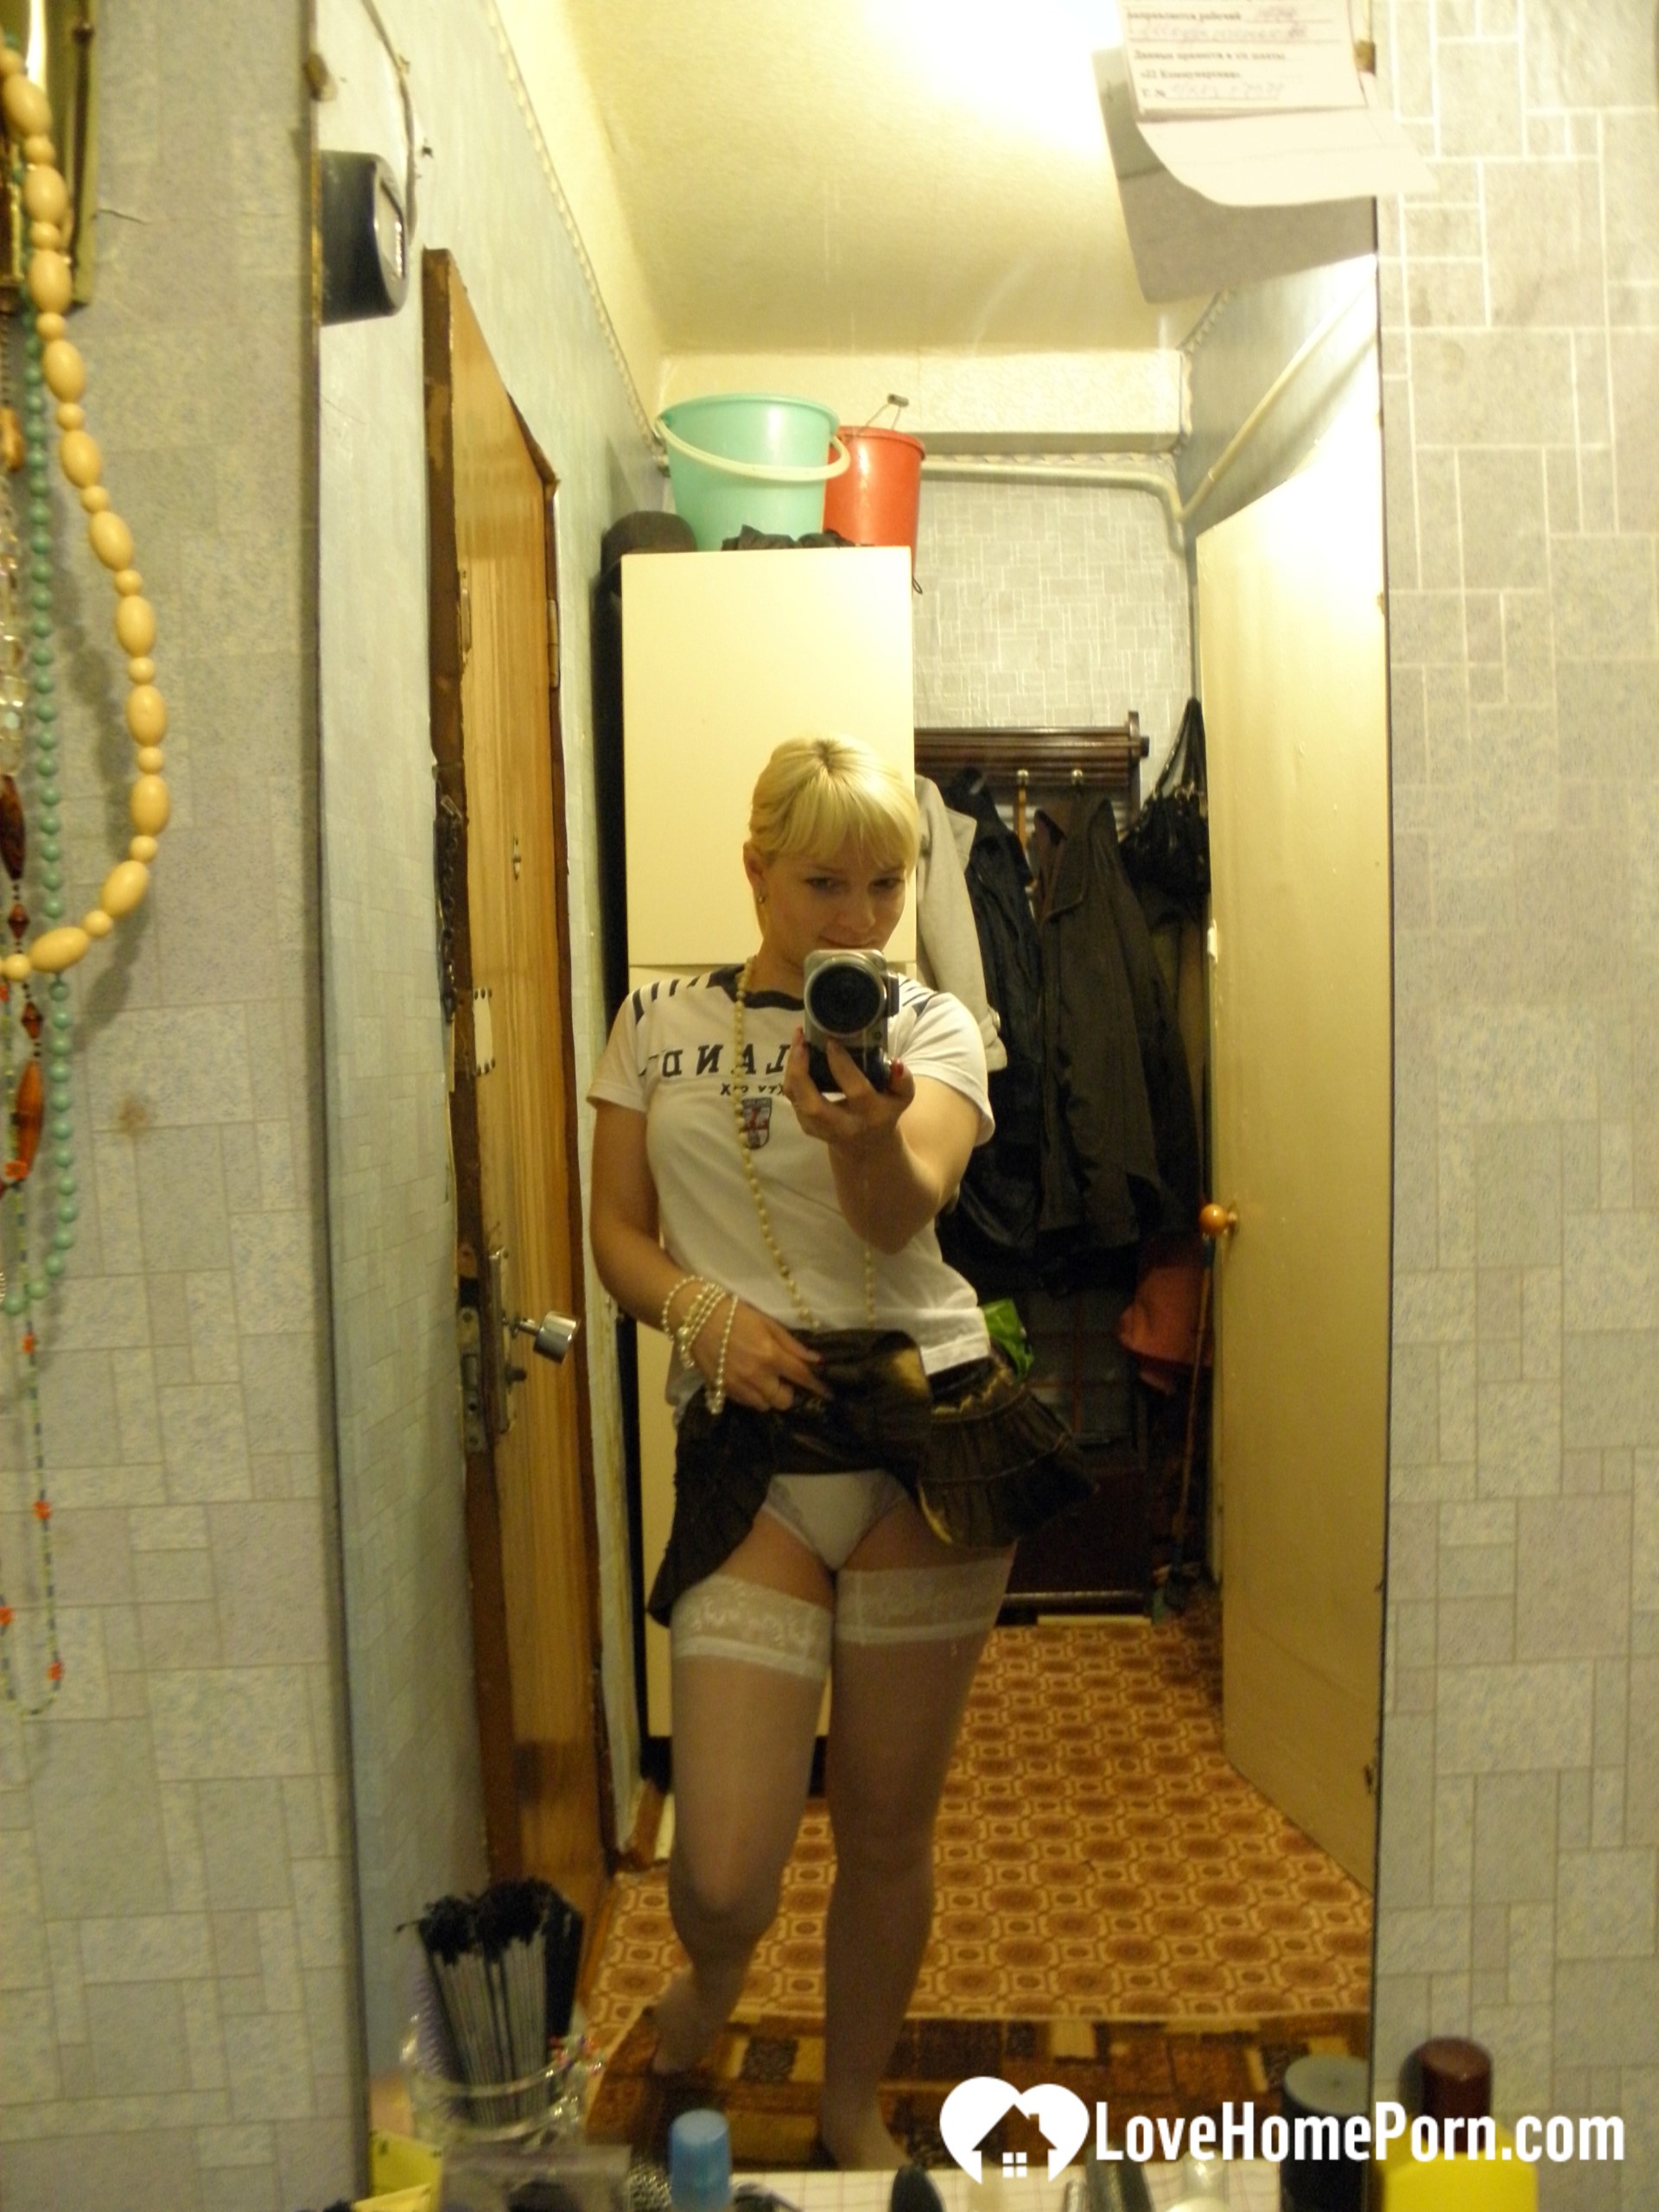 Aroused blonde in stockings taking naughty selfies